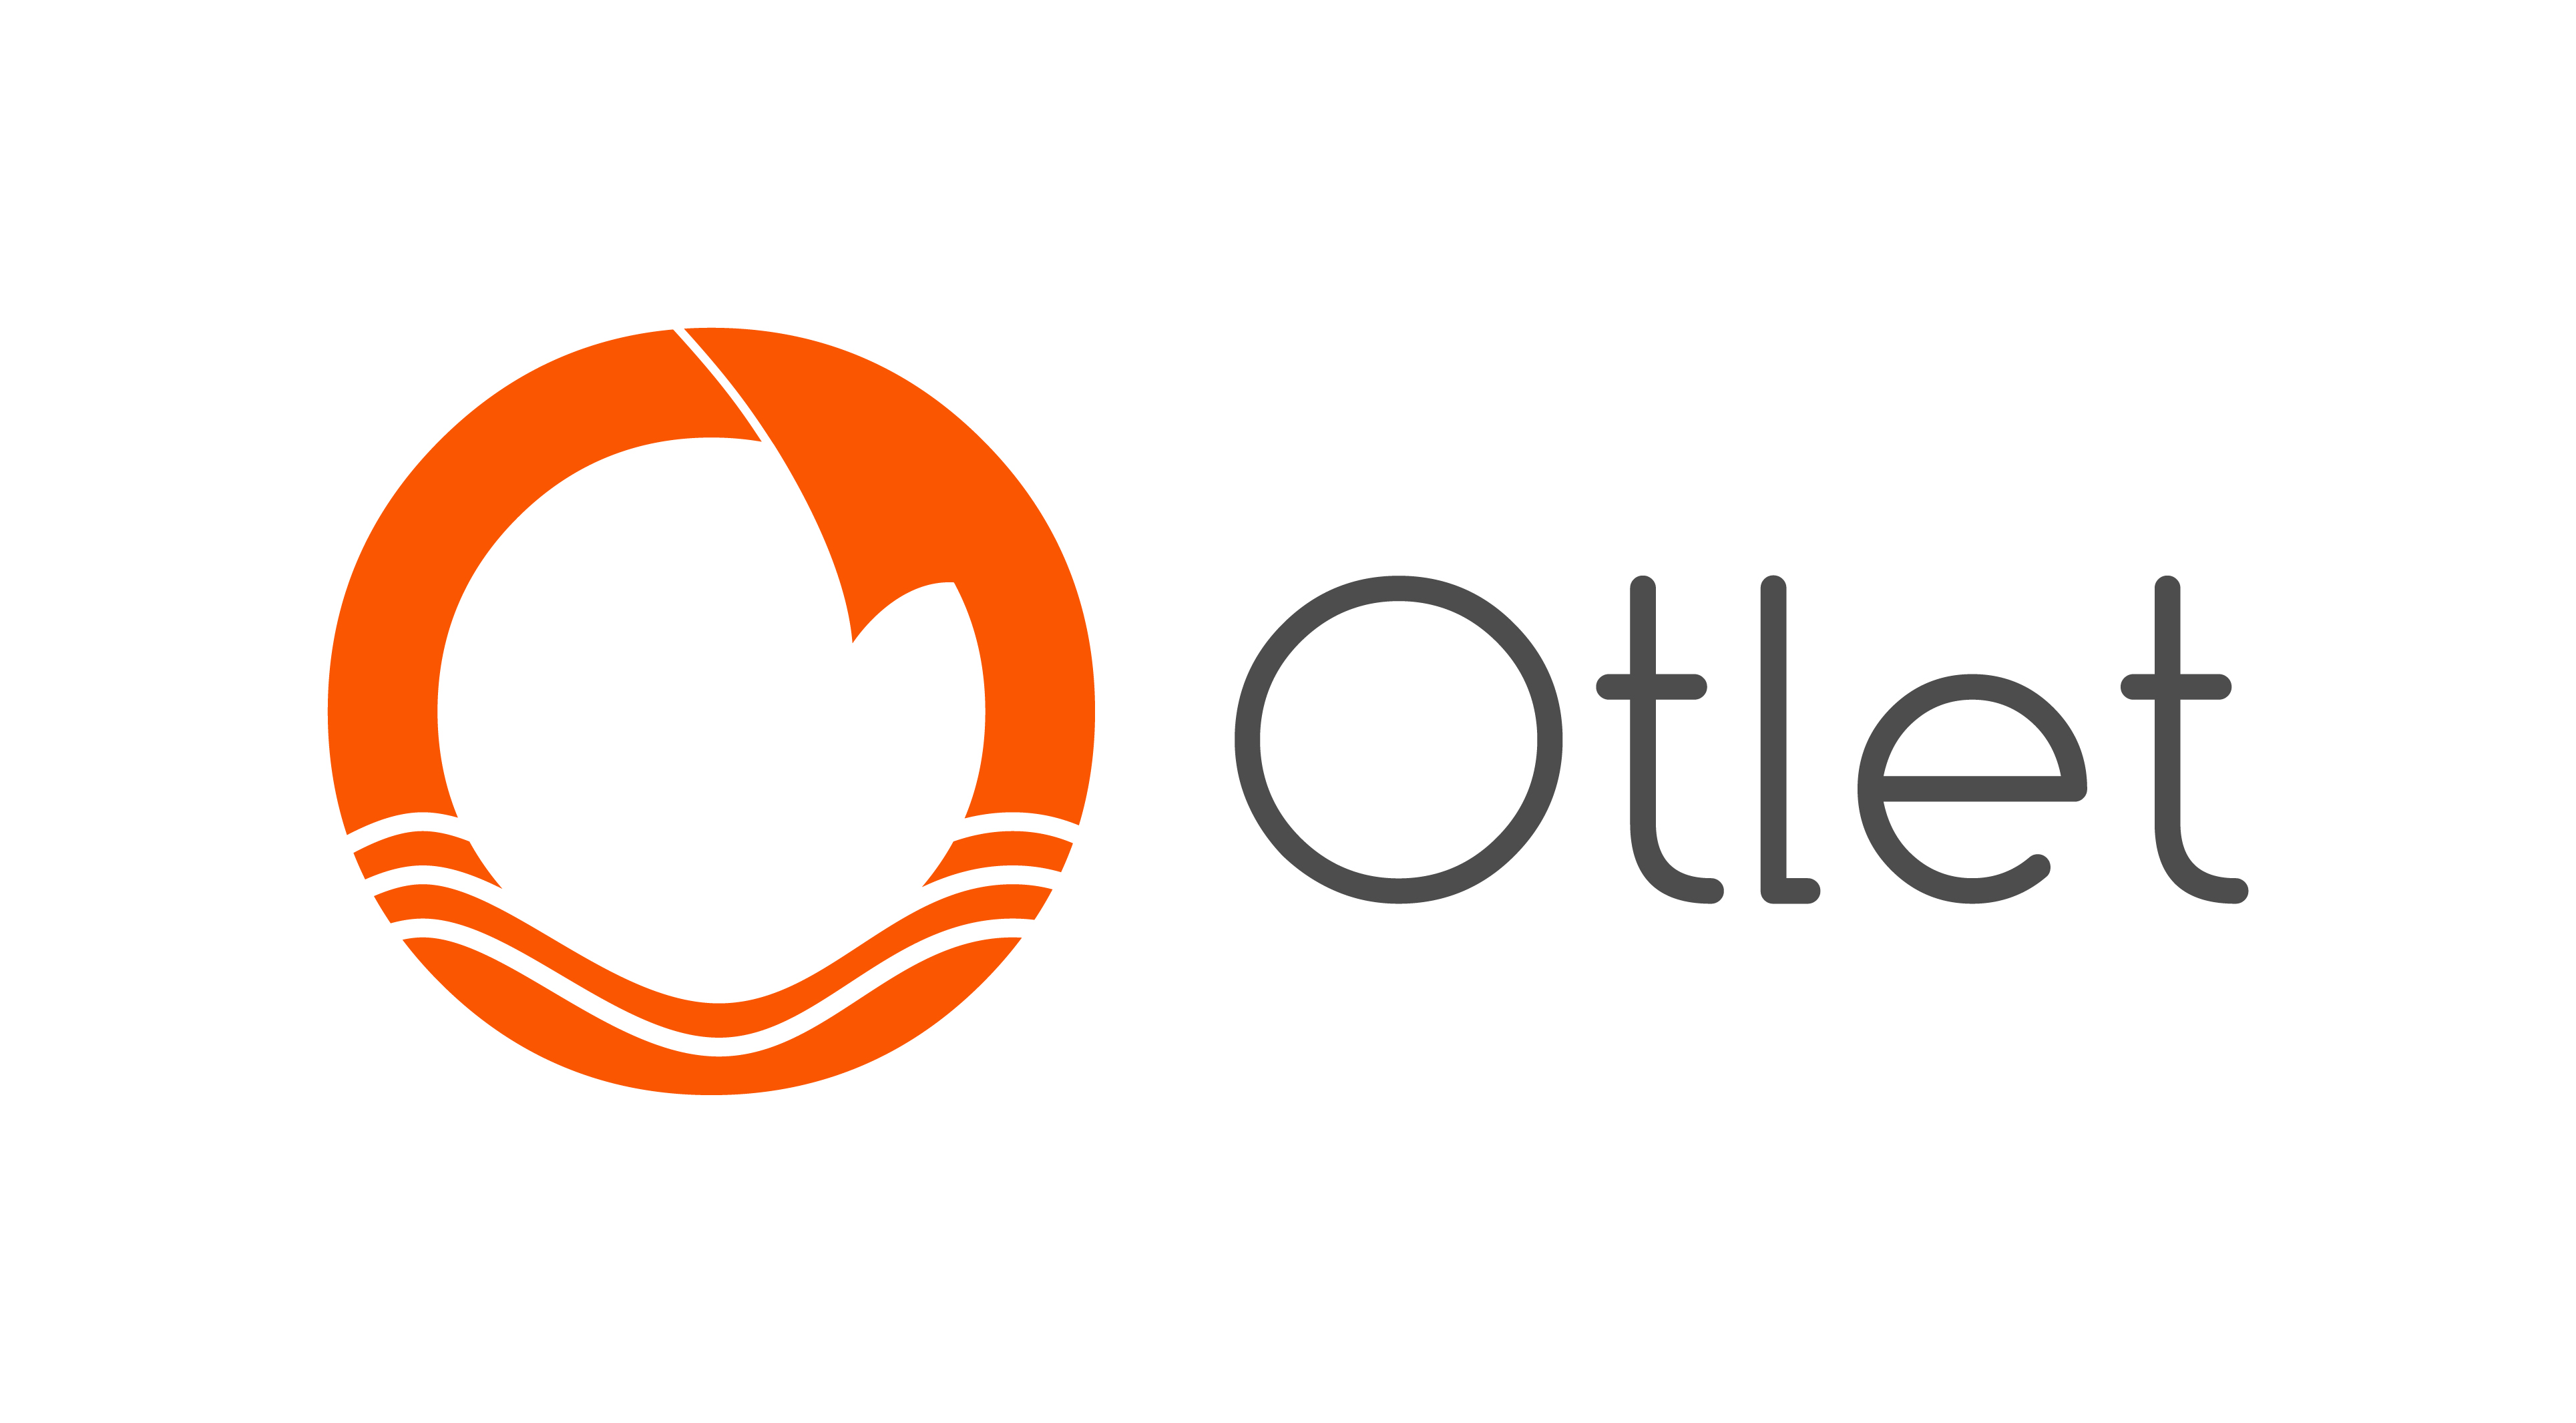 Otlet logo